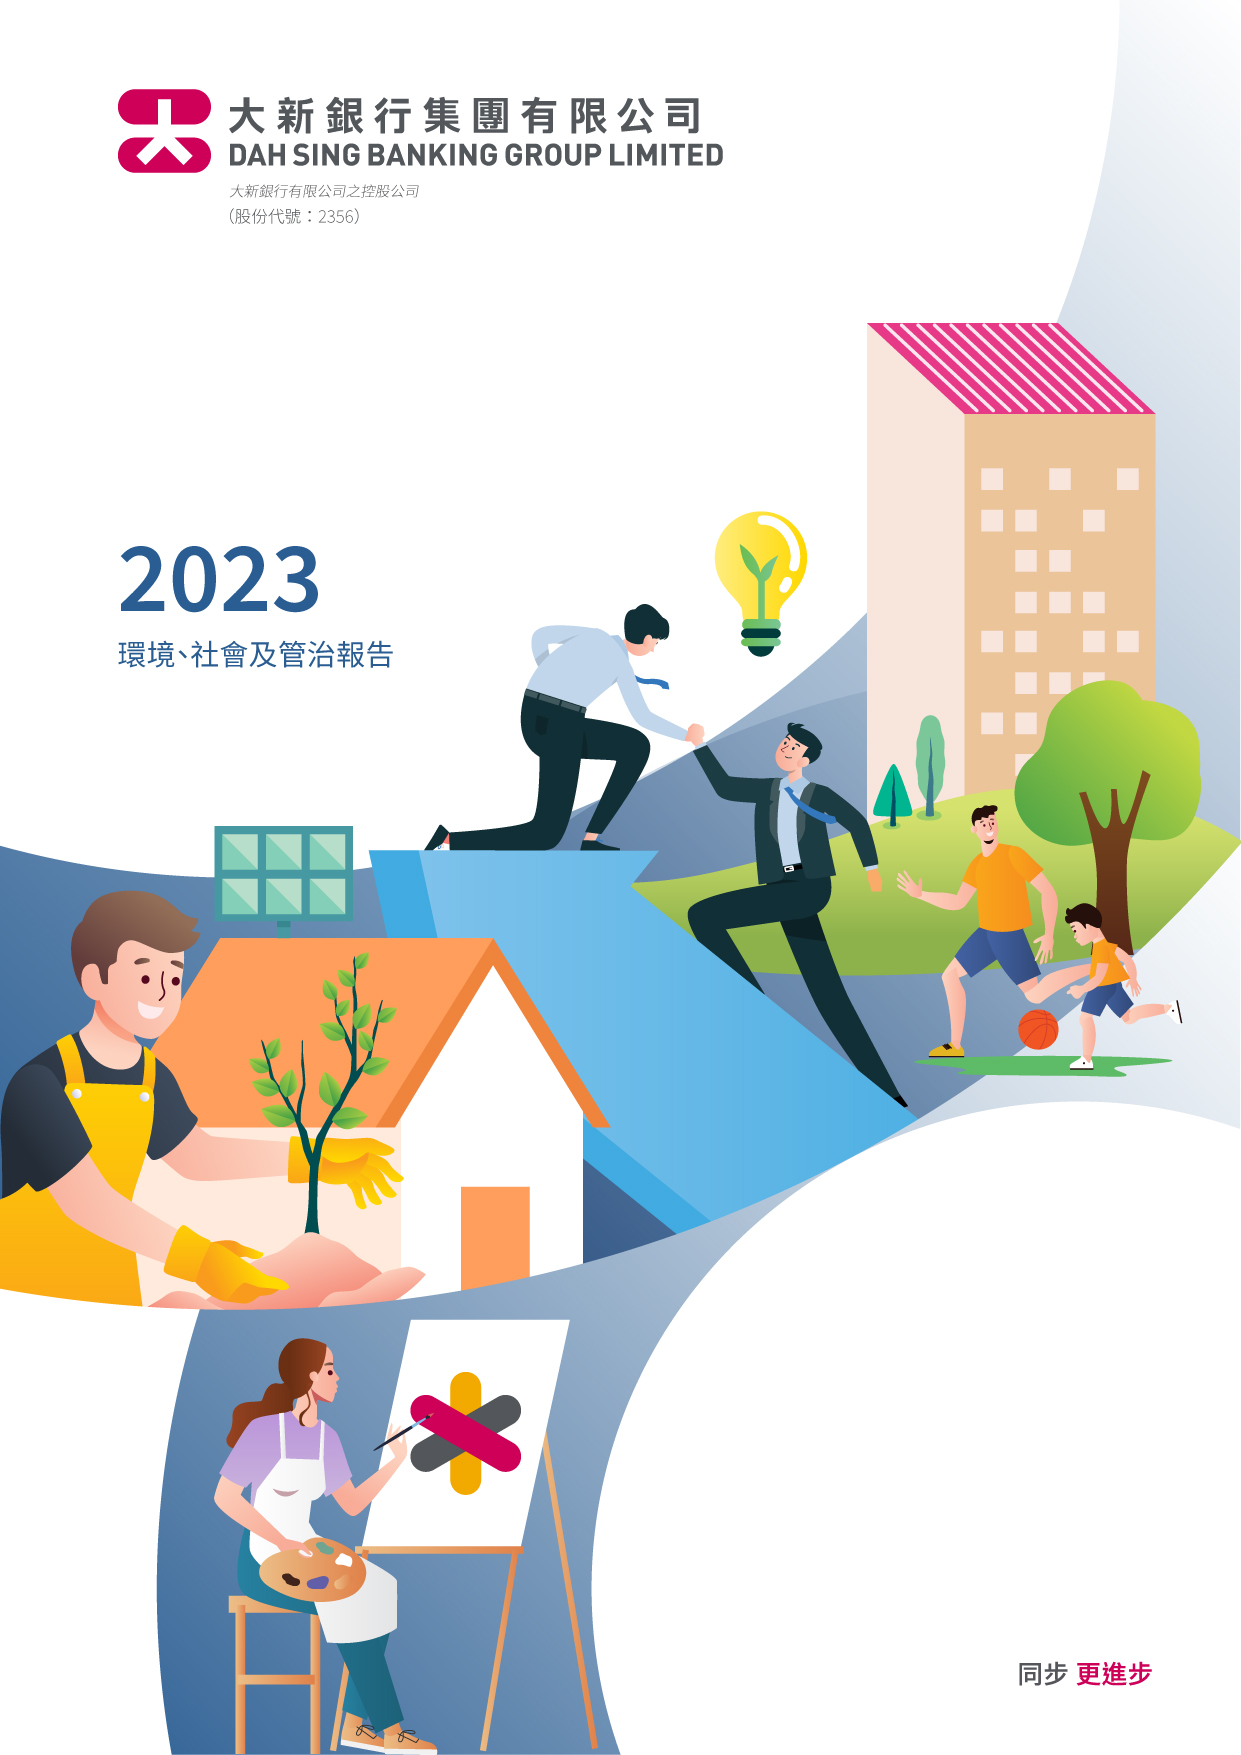 大新銀行集團有限公司 - 2023年度環境、社會及管治報告